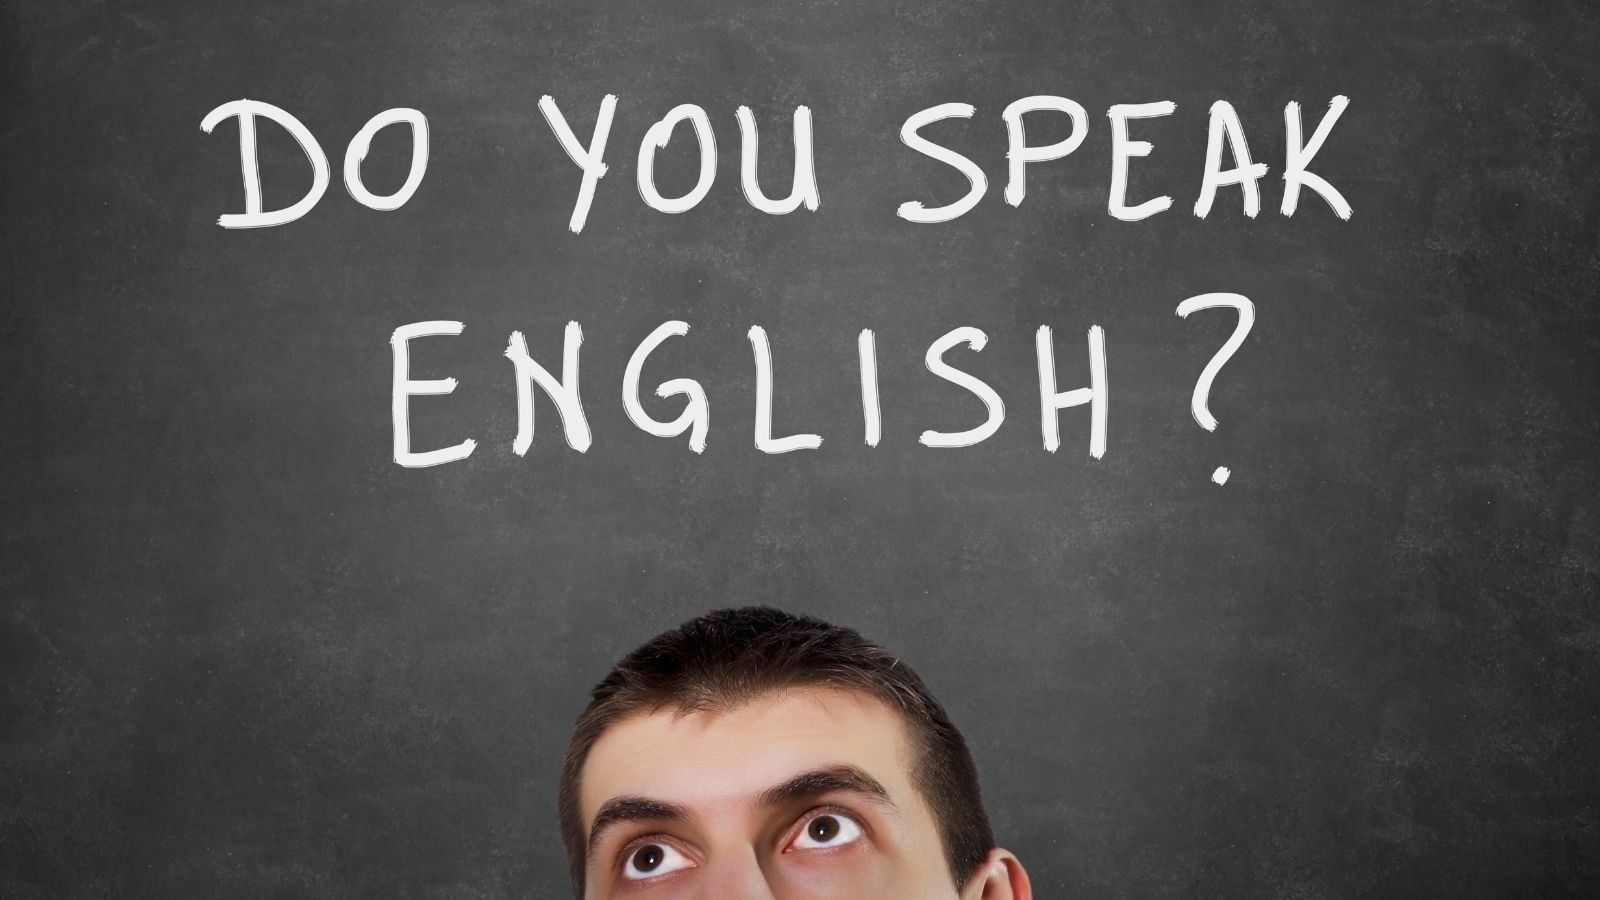 Why do you speak english. Do you speak English. Do you speak English иконка.